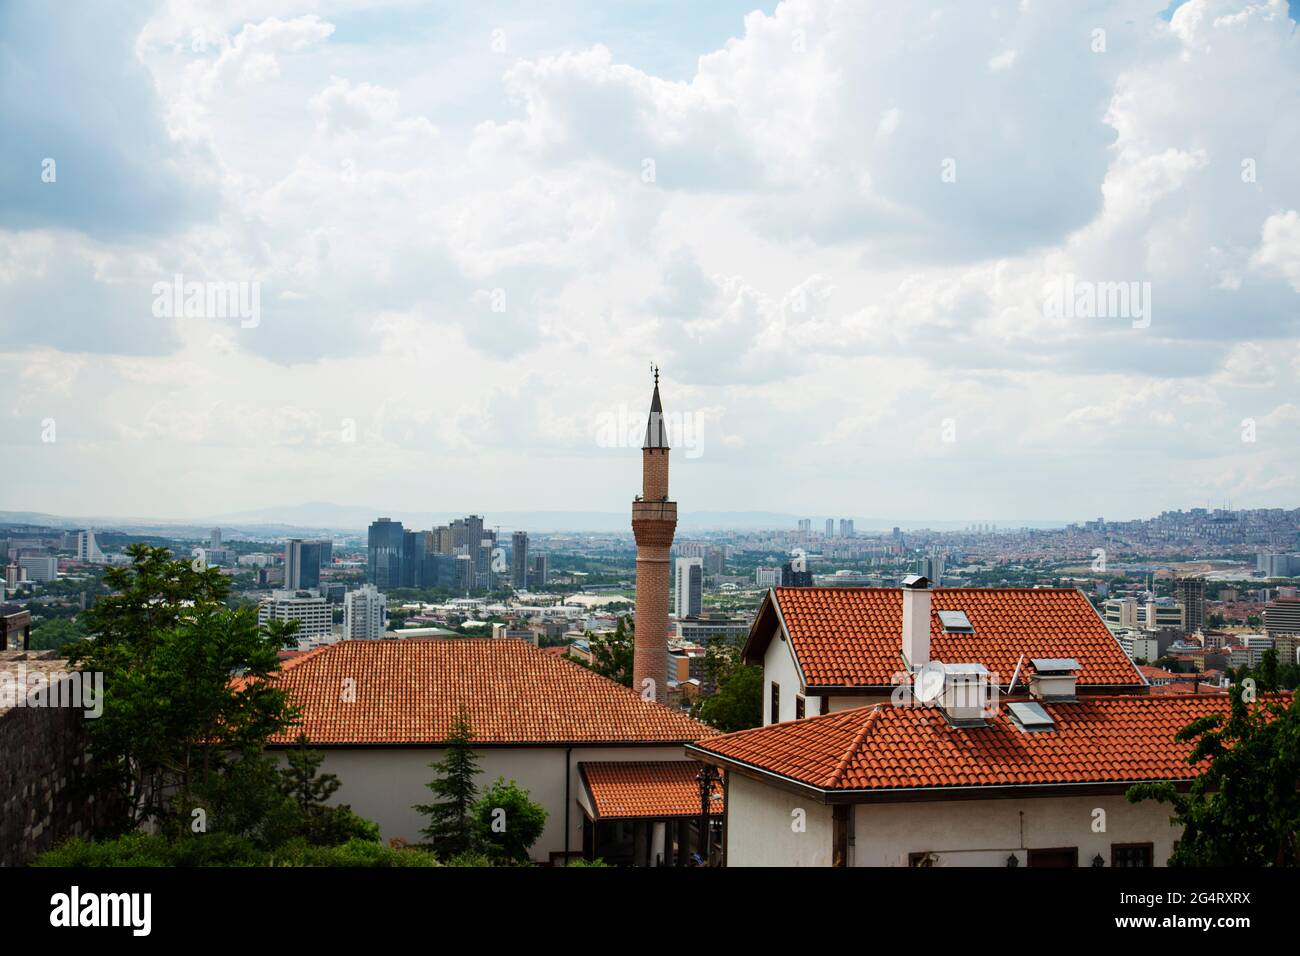 City view from Ankara Castle. Stock Photo